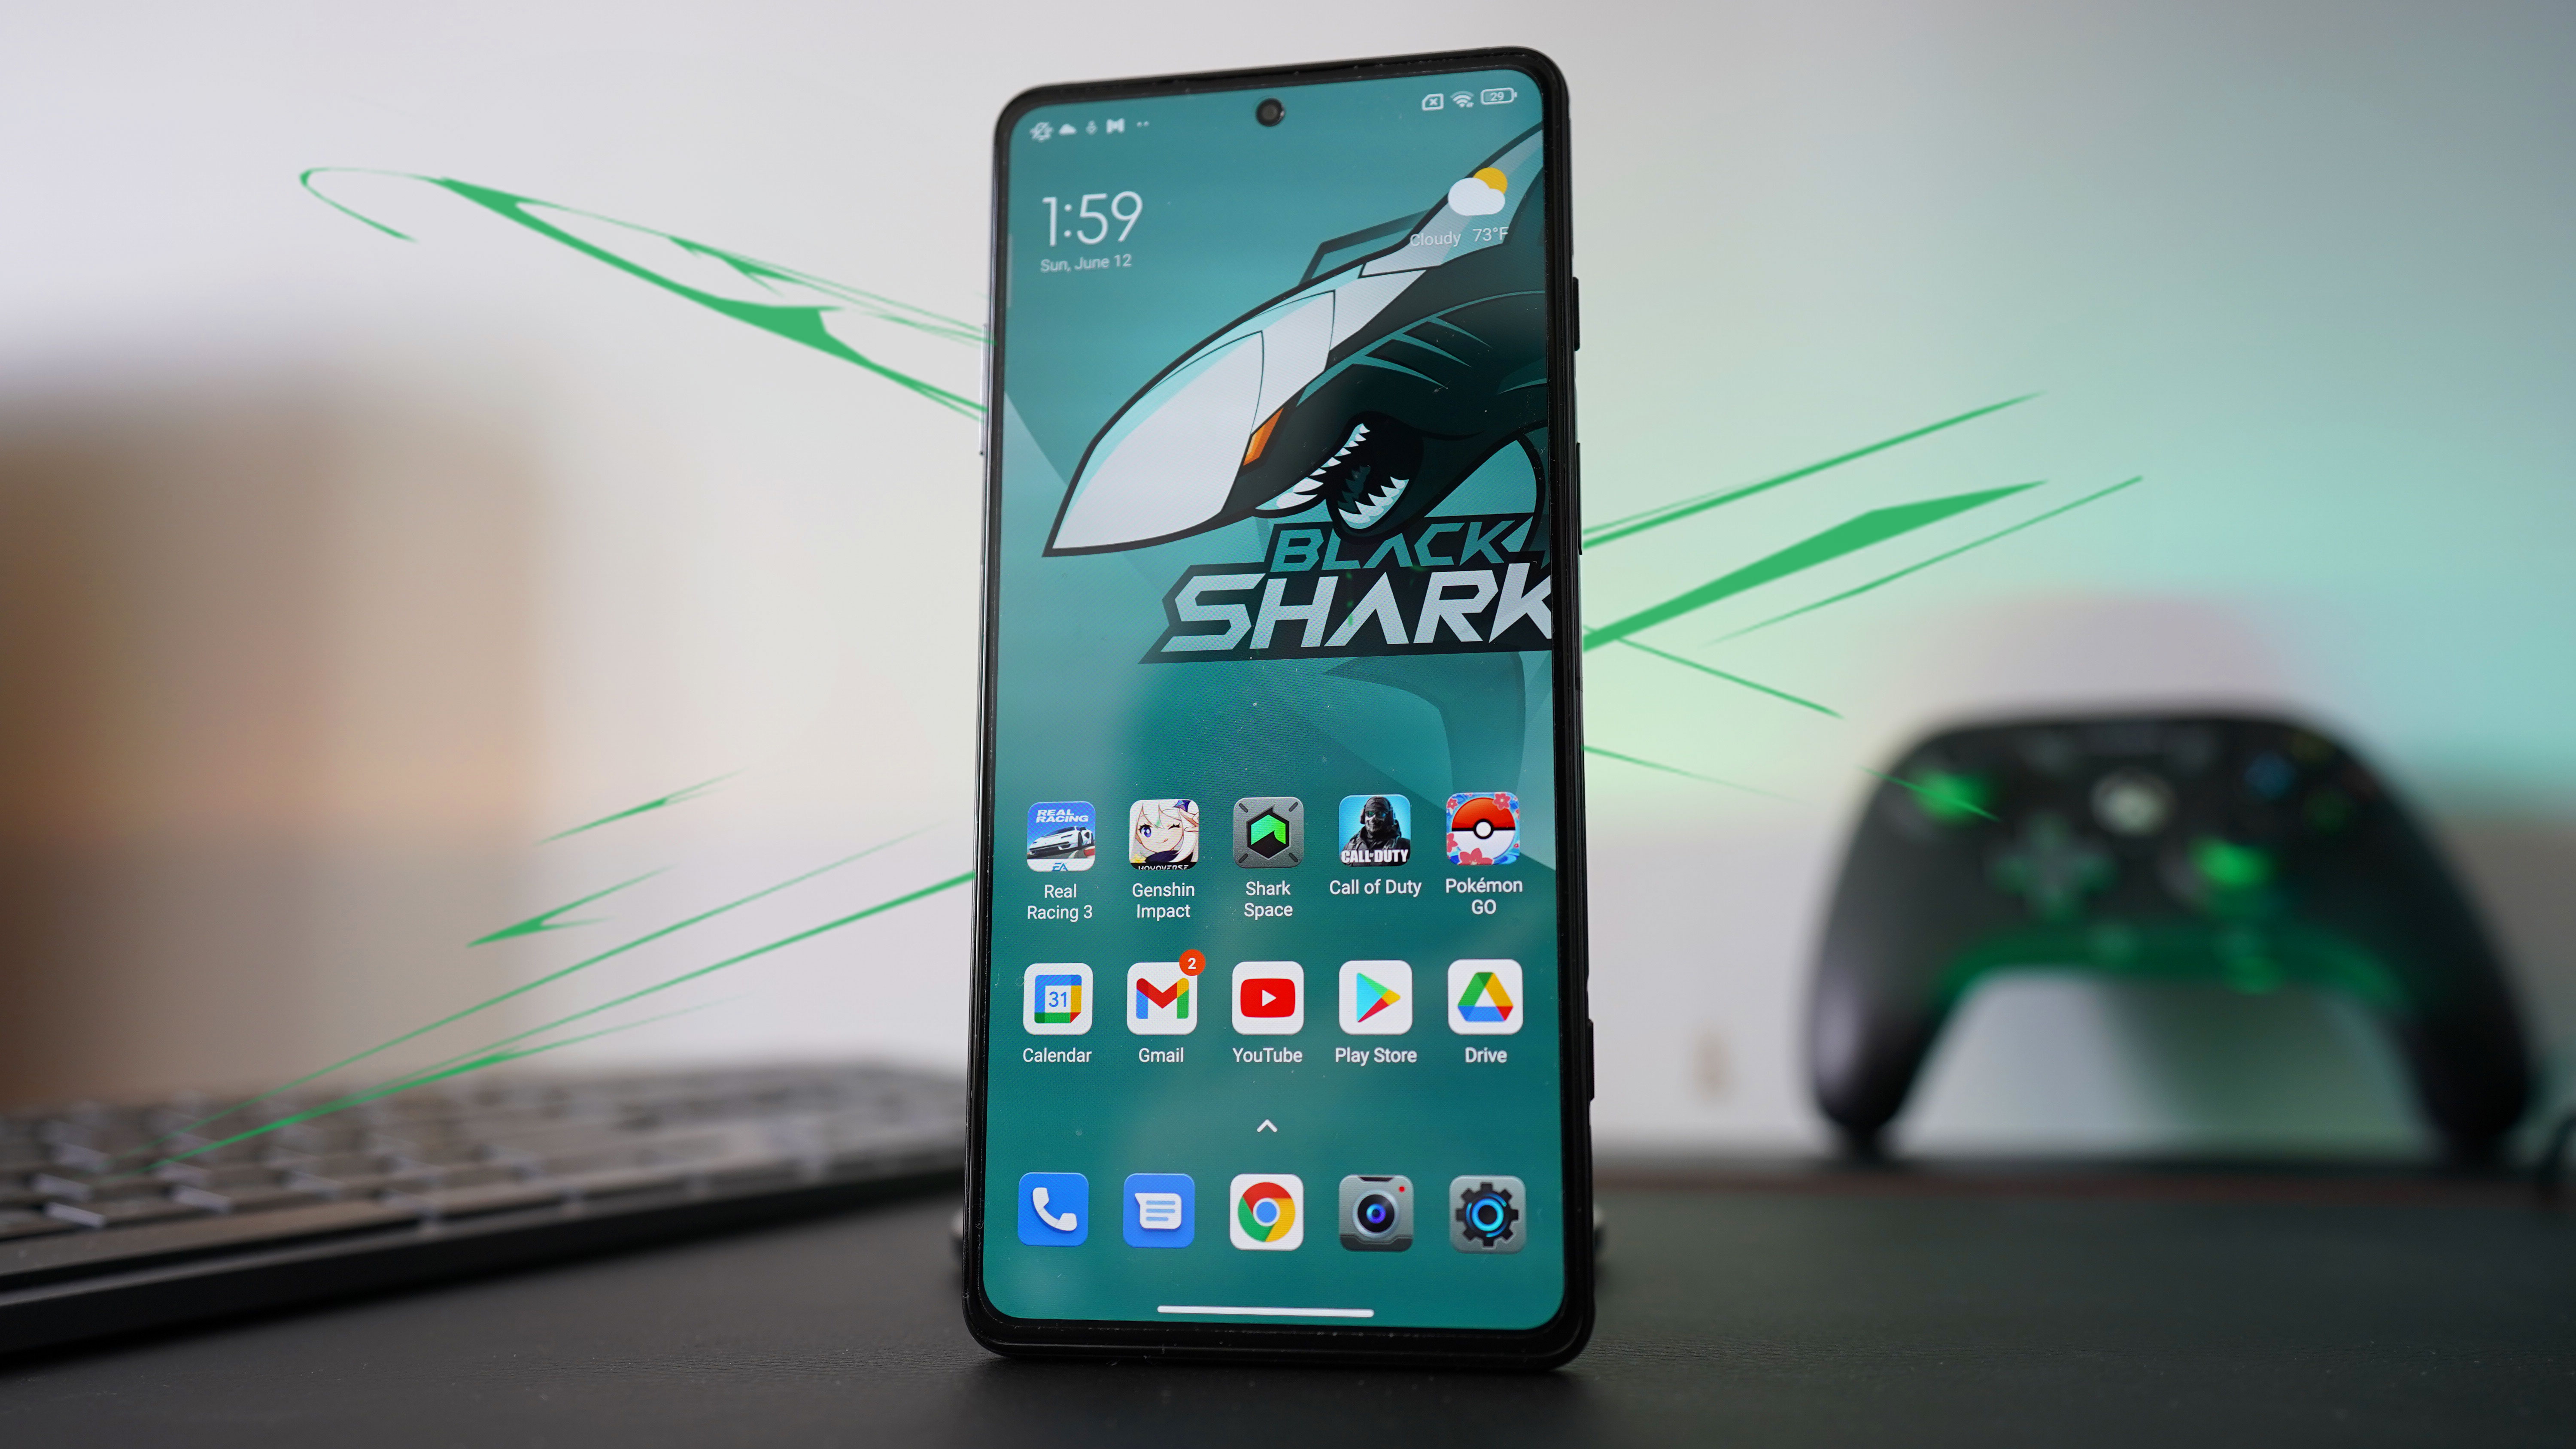 Xiaomi Black Shark -  External Reviews